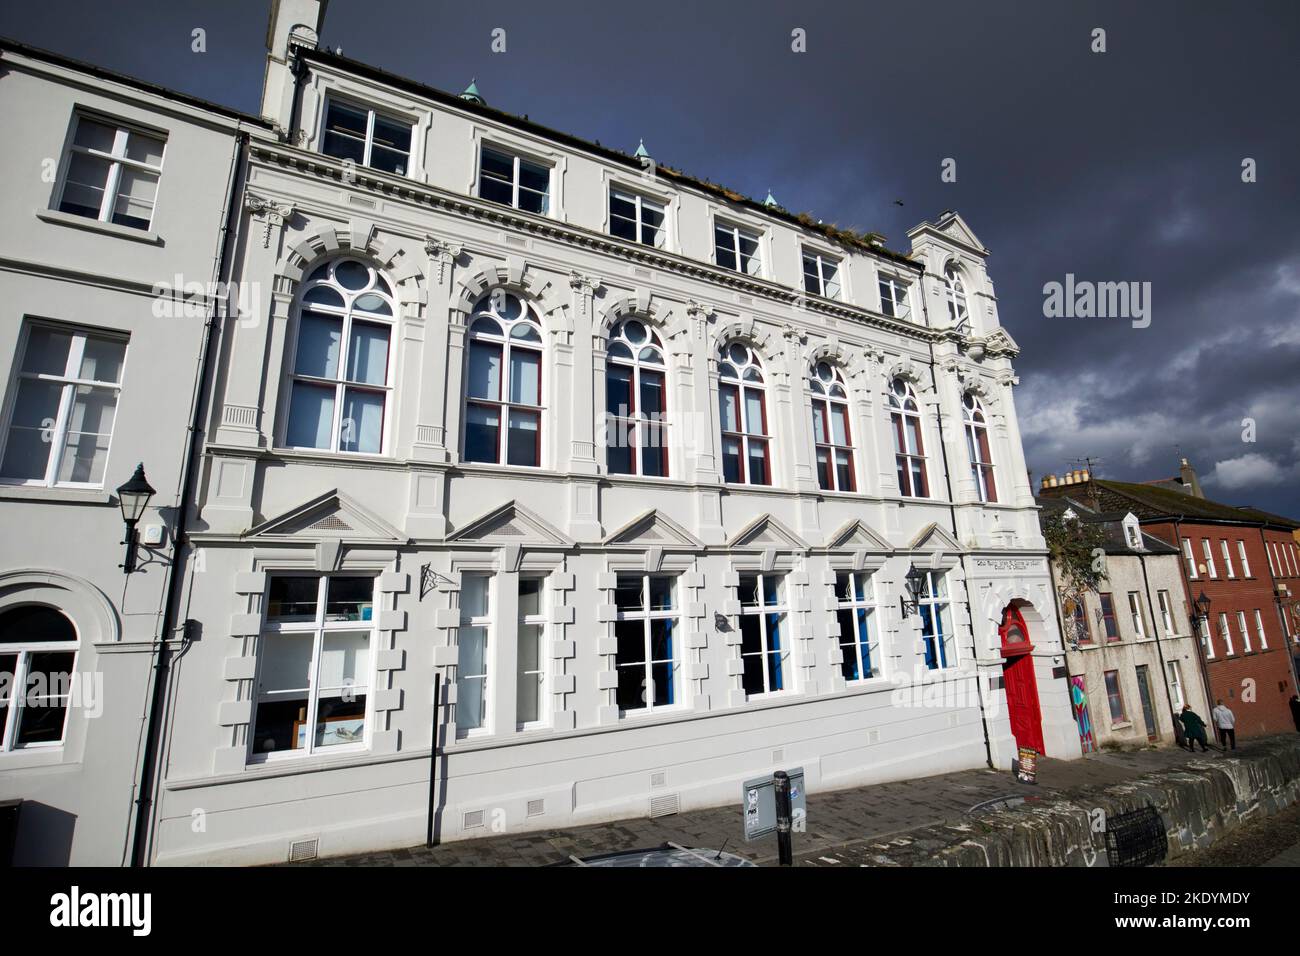 le théâtre de théâtre ancien st josephs école primaire derry londonderry nord de l'irlande du royaume-uni Banque D'Images